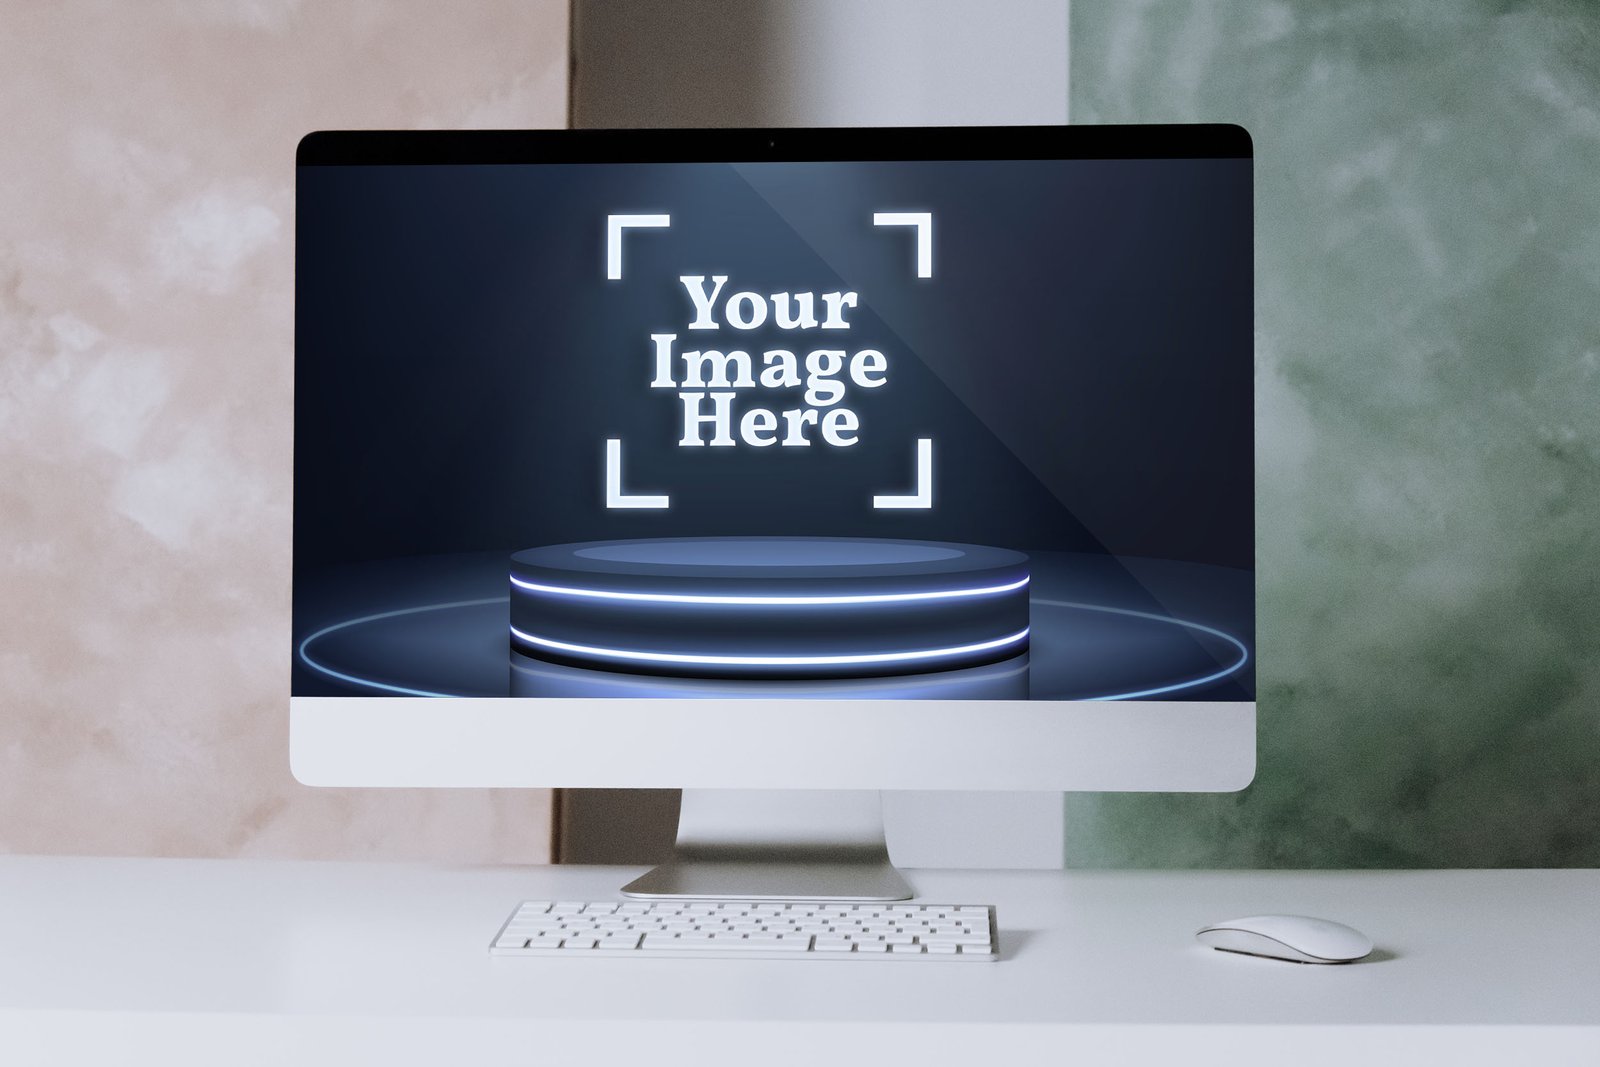 Free iMac Mockup Photoshop By Snail motion